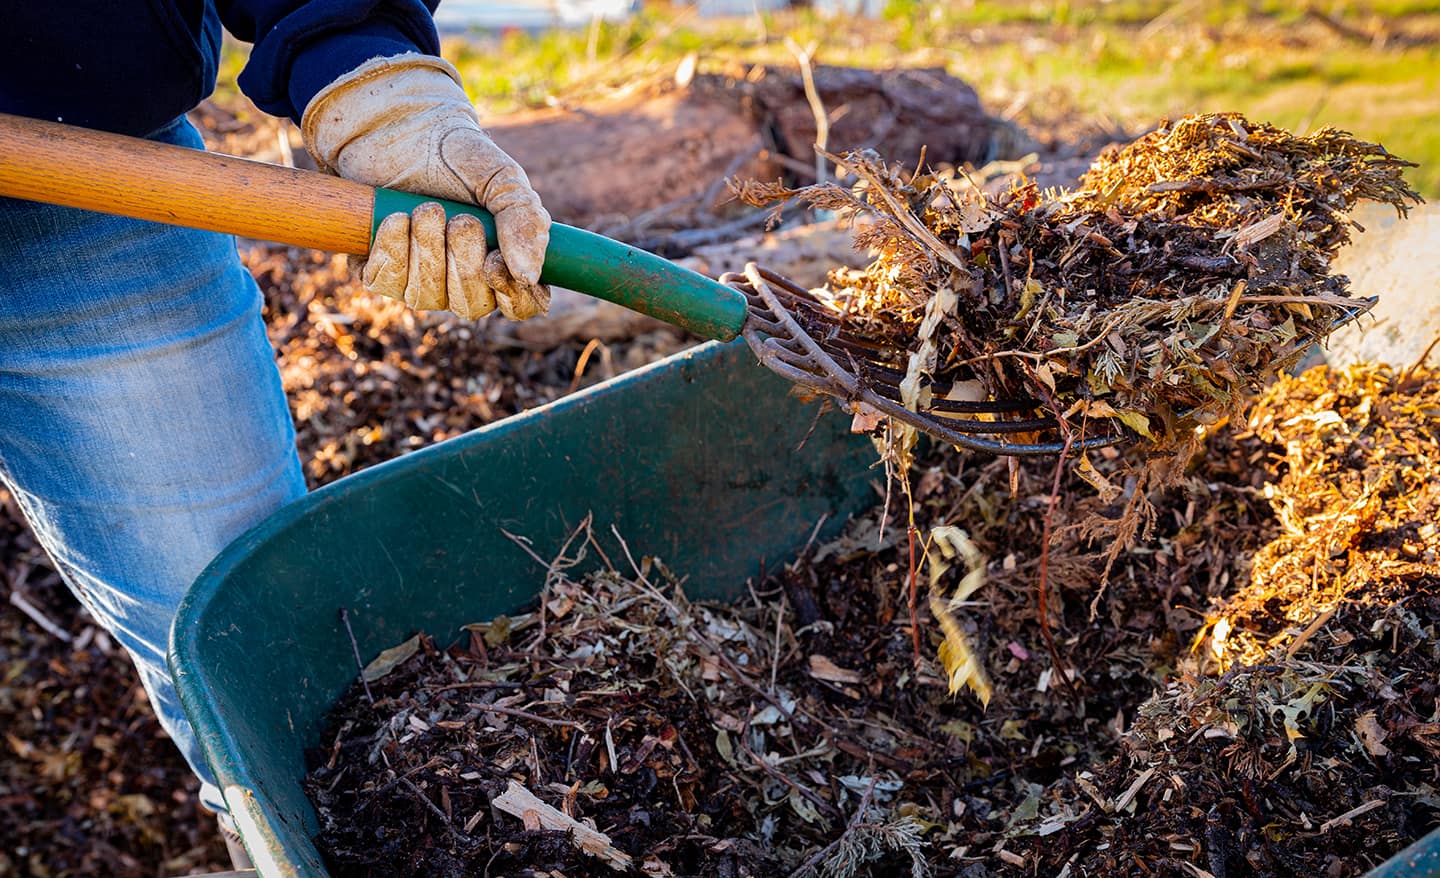 Gardener uses shovel to turn compost pile